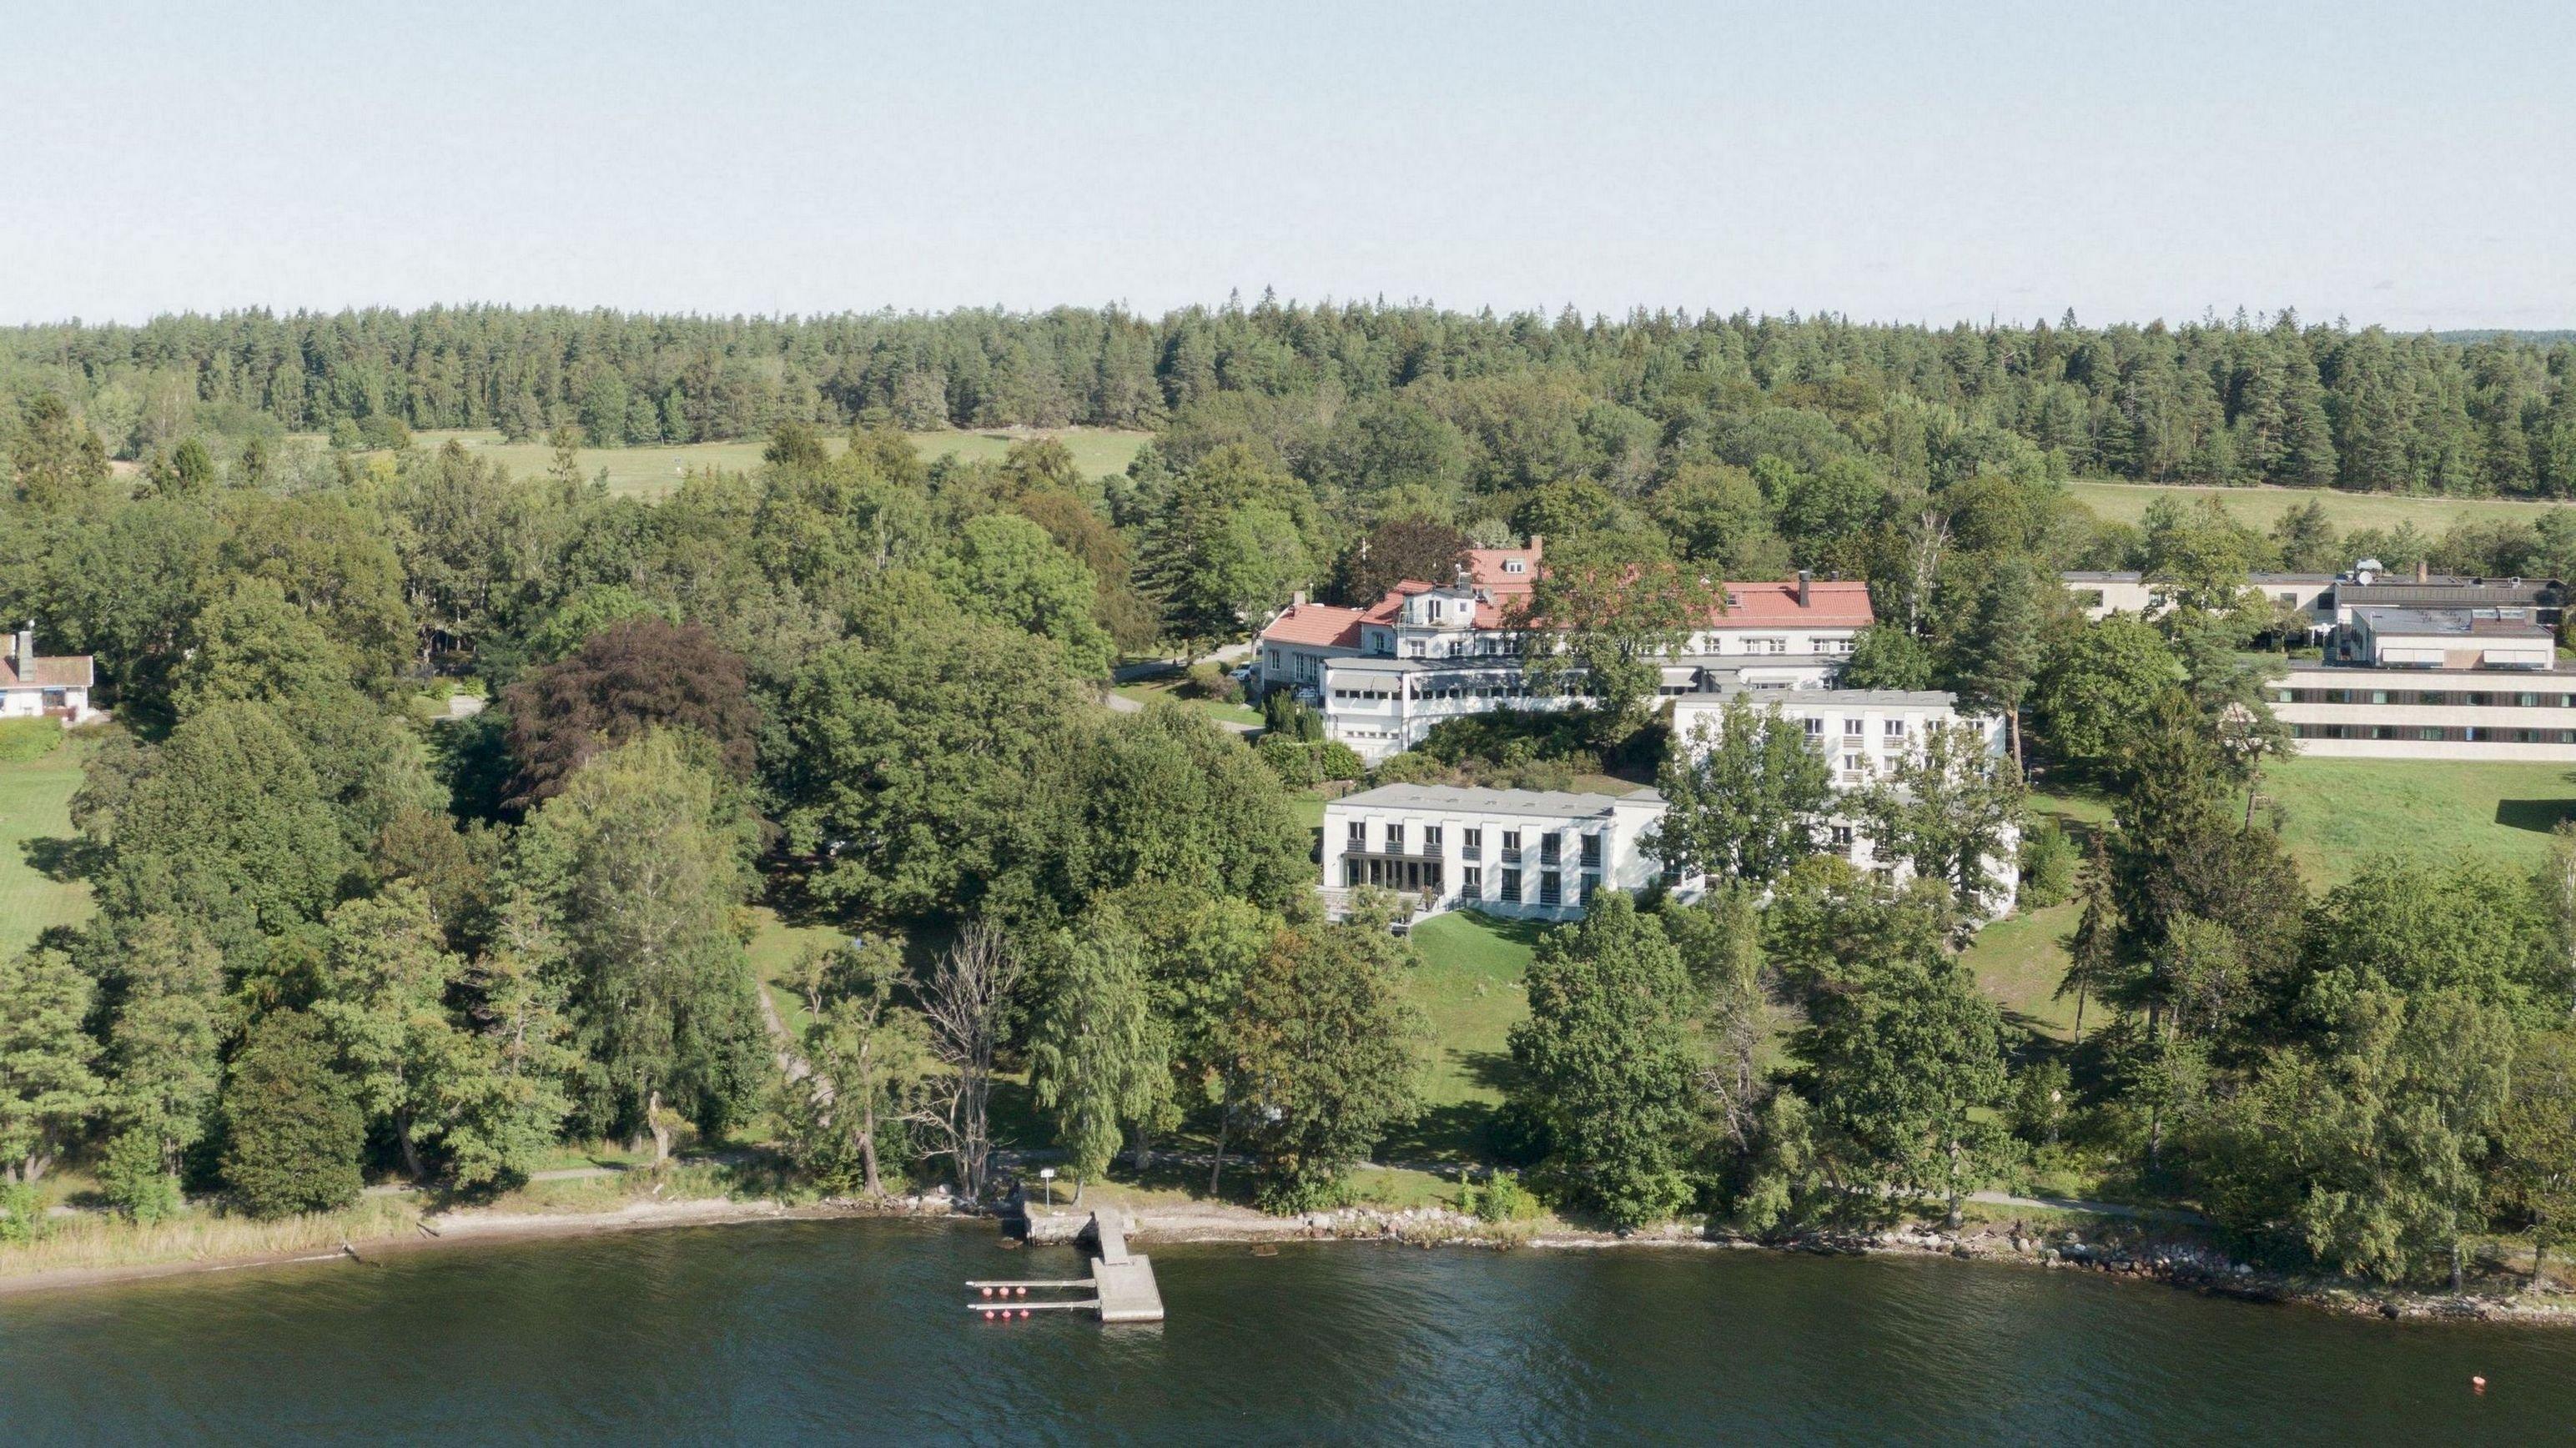 Villa Lovik in Lidingo, Sweden